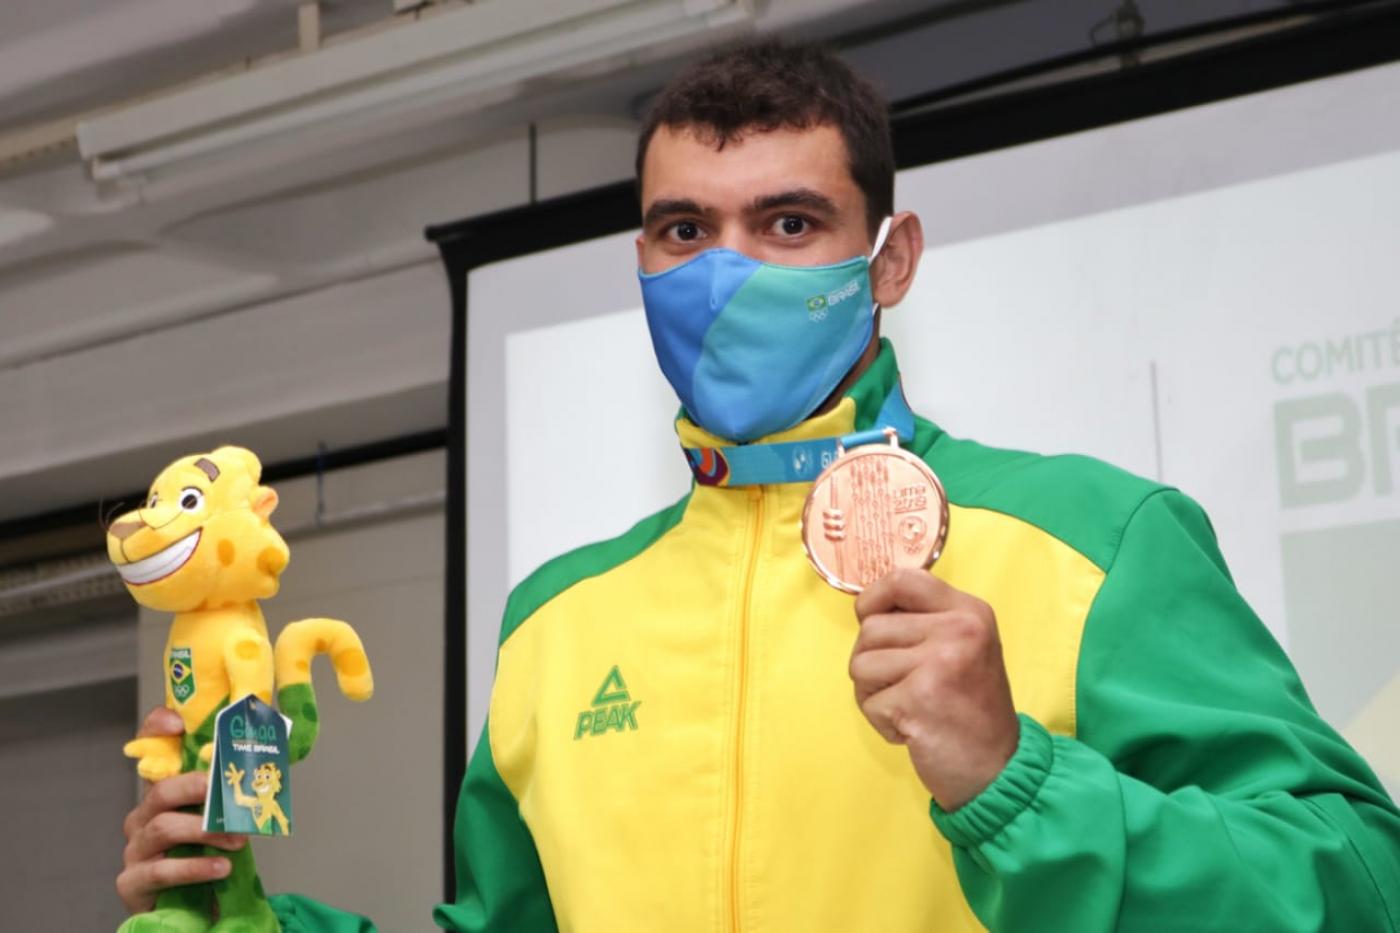 O atleta segura o boneco do mascote da competição na mão direita e a medalha na esquerda. Ele está de uniforme e máscara. #paratodosverem